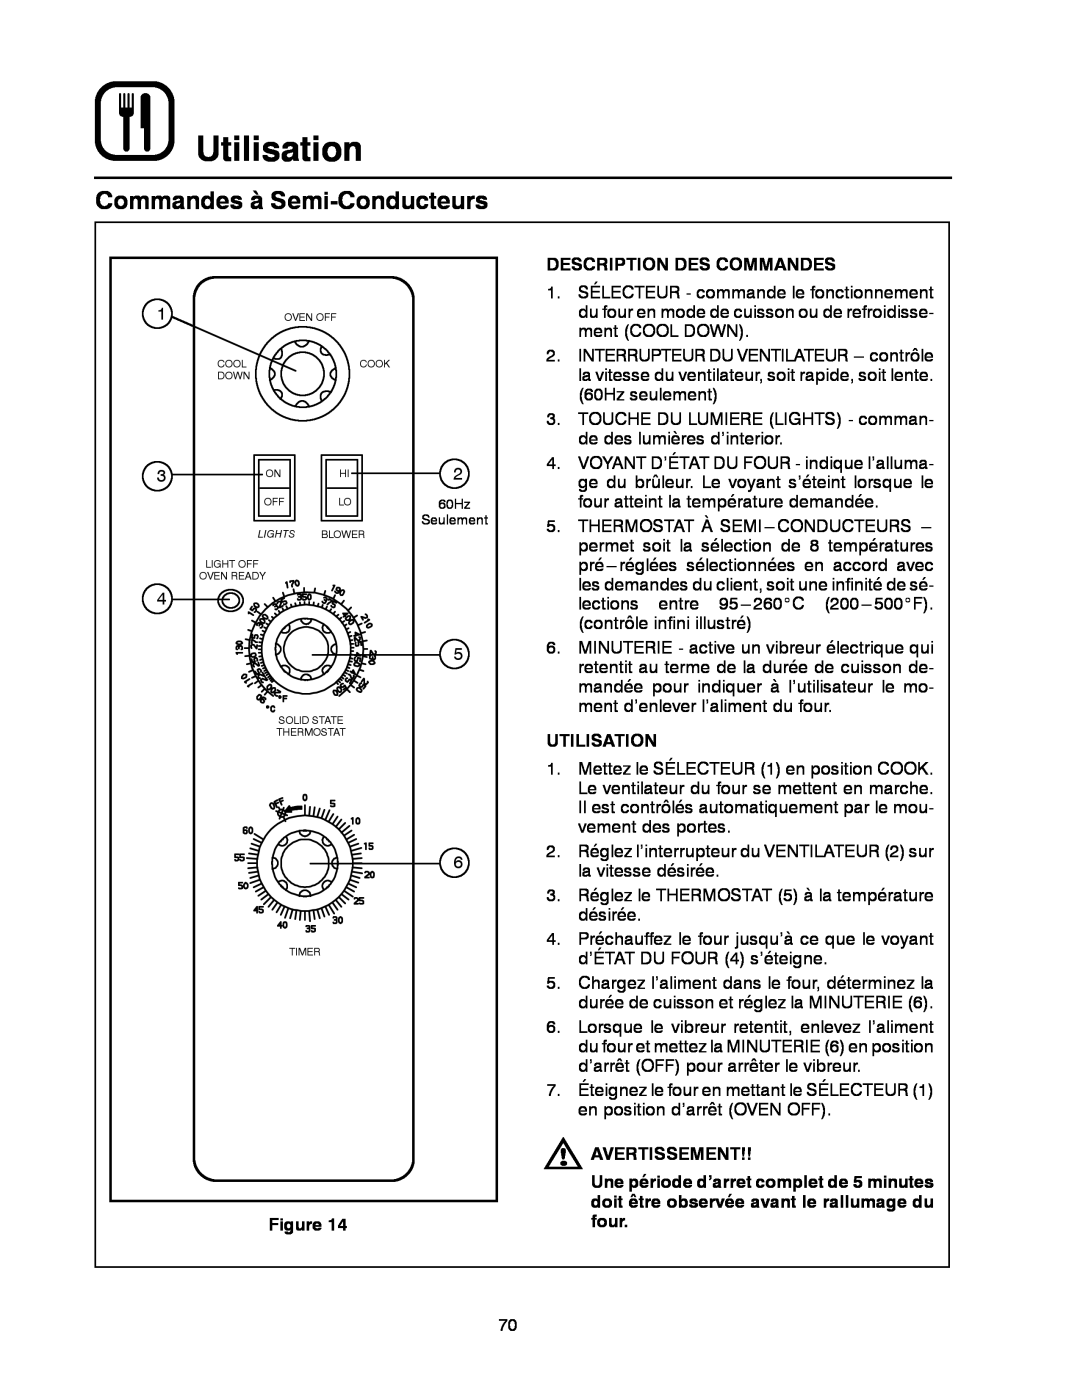 Blodgett DFG-200, DFG-100 manual Commandes à Semi-Conducteurs, Utilisation, Description Des Commandes, Avertissement 